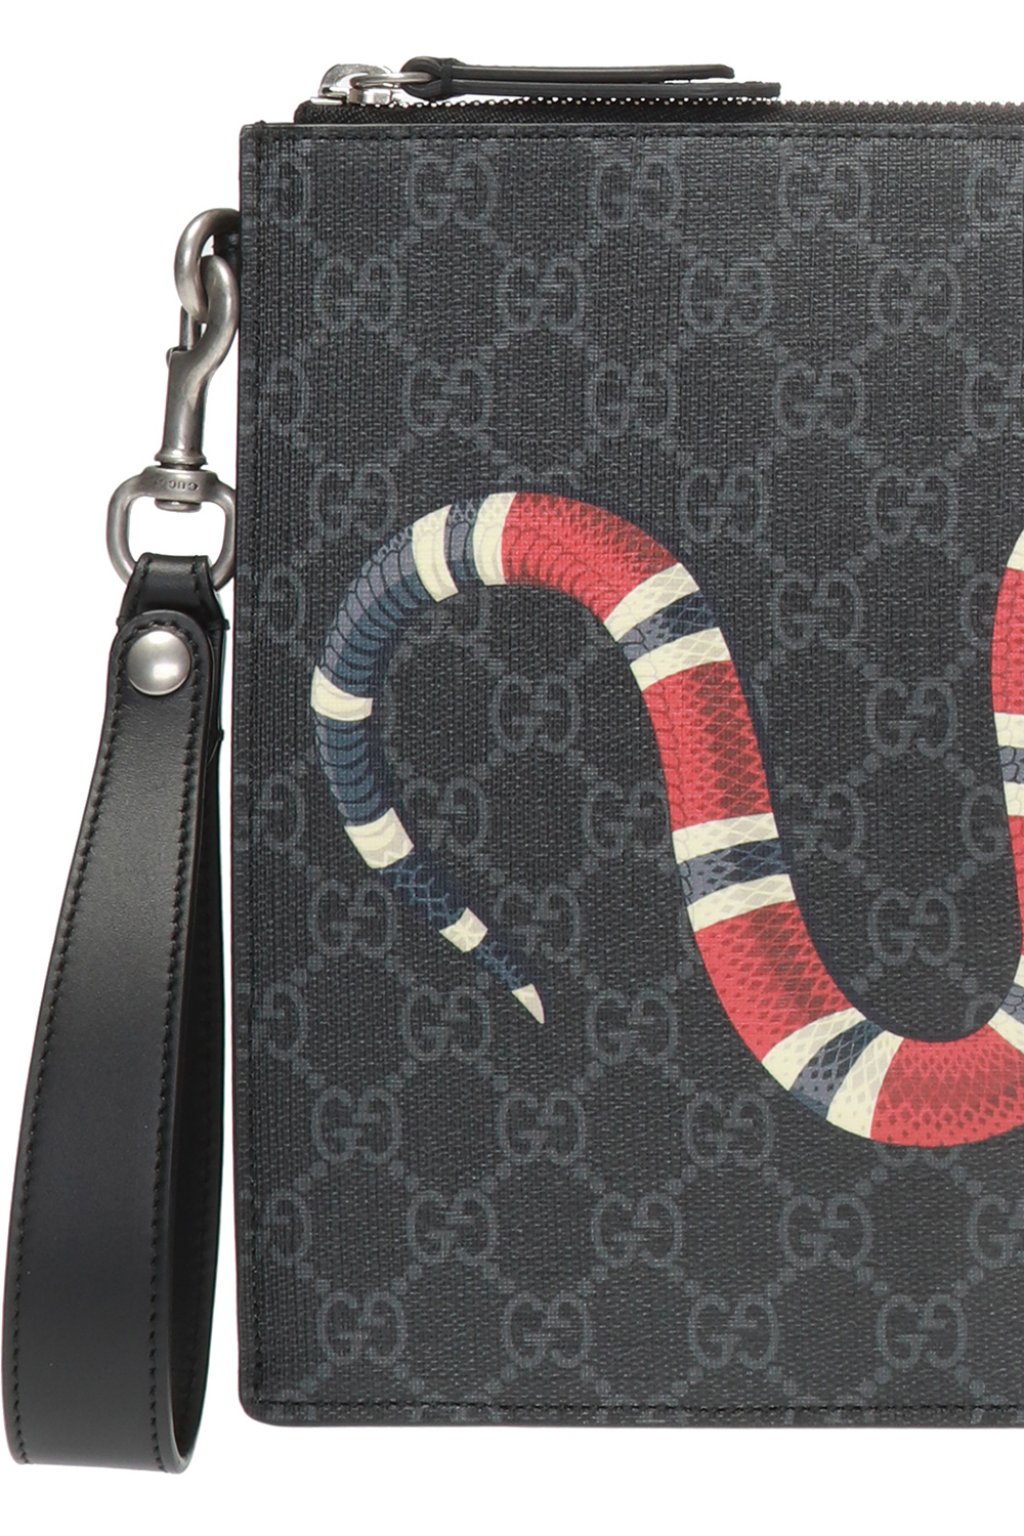 Snake motif clutch Gucci - Vitkac Singapore